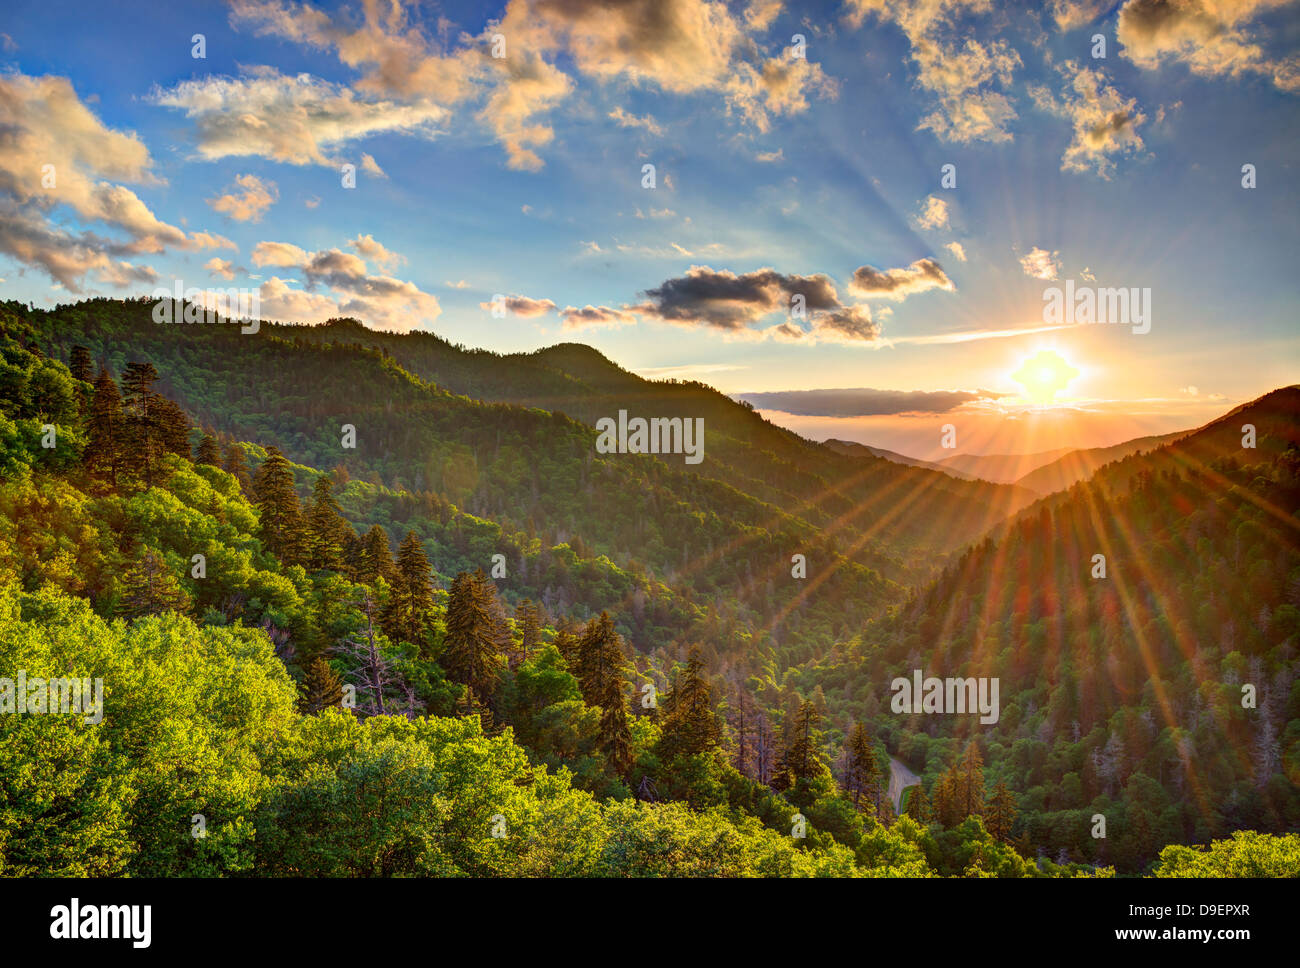 Newfound Gap dans les Smoky Mountains près de Gatlinburg, Tennessee. Banque D'Images